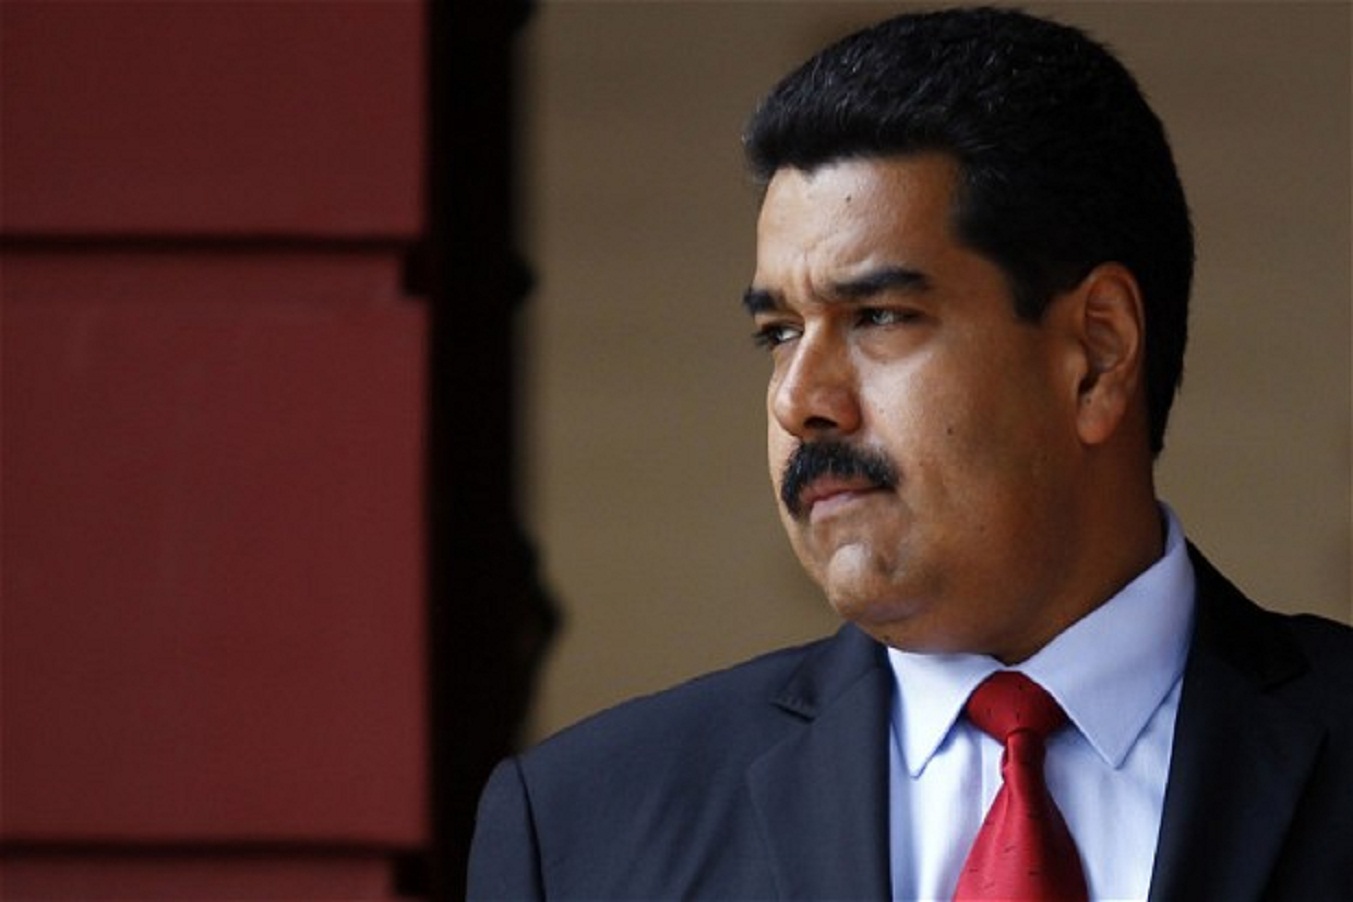 "Президент Венесуэлы Николас Мадуро в России": СМИ опубликовали фейковую информацию - кадры